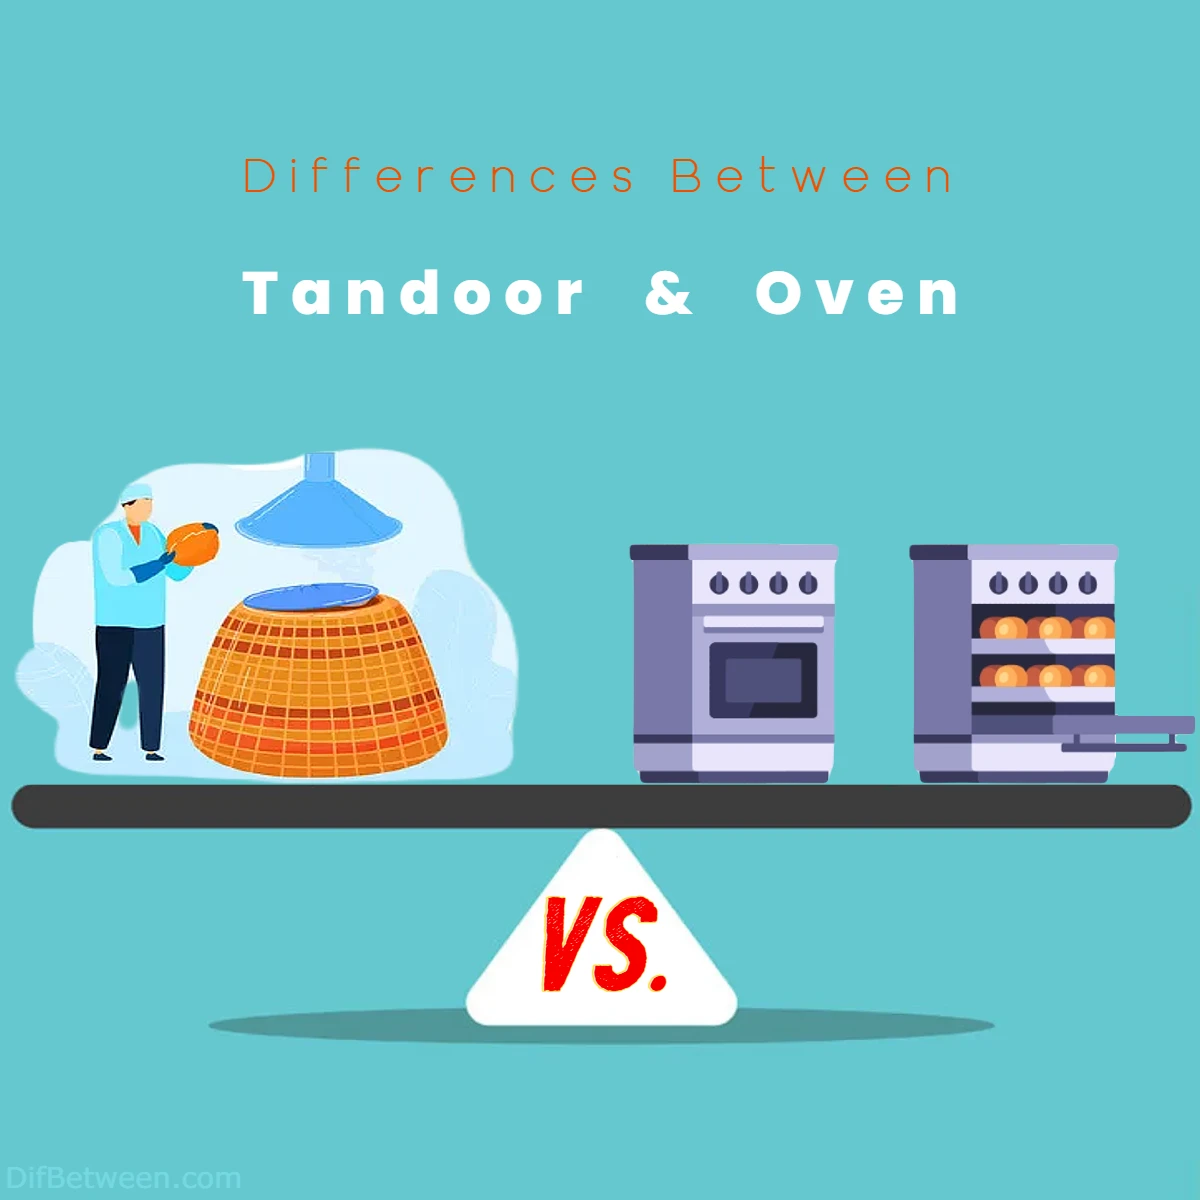 Differences Between Tandoor vs Oven